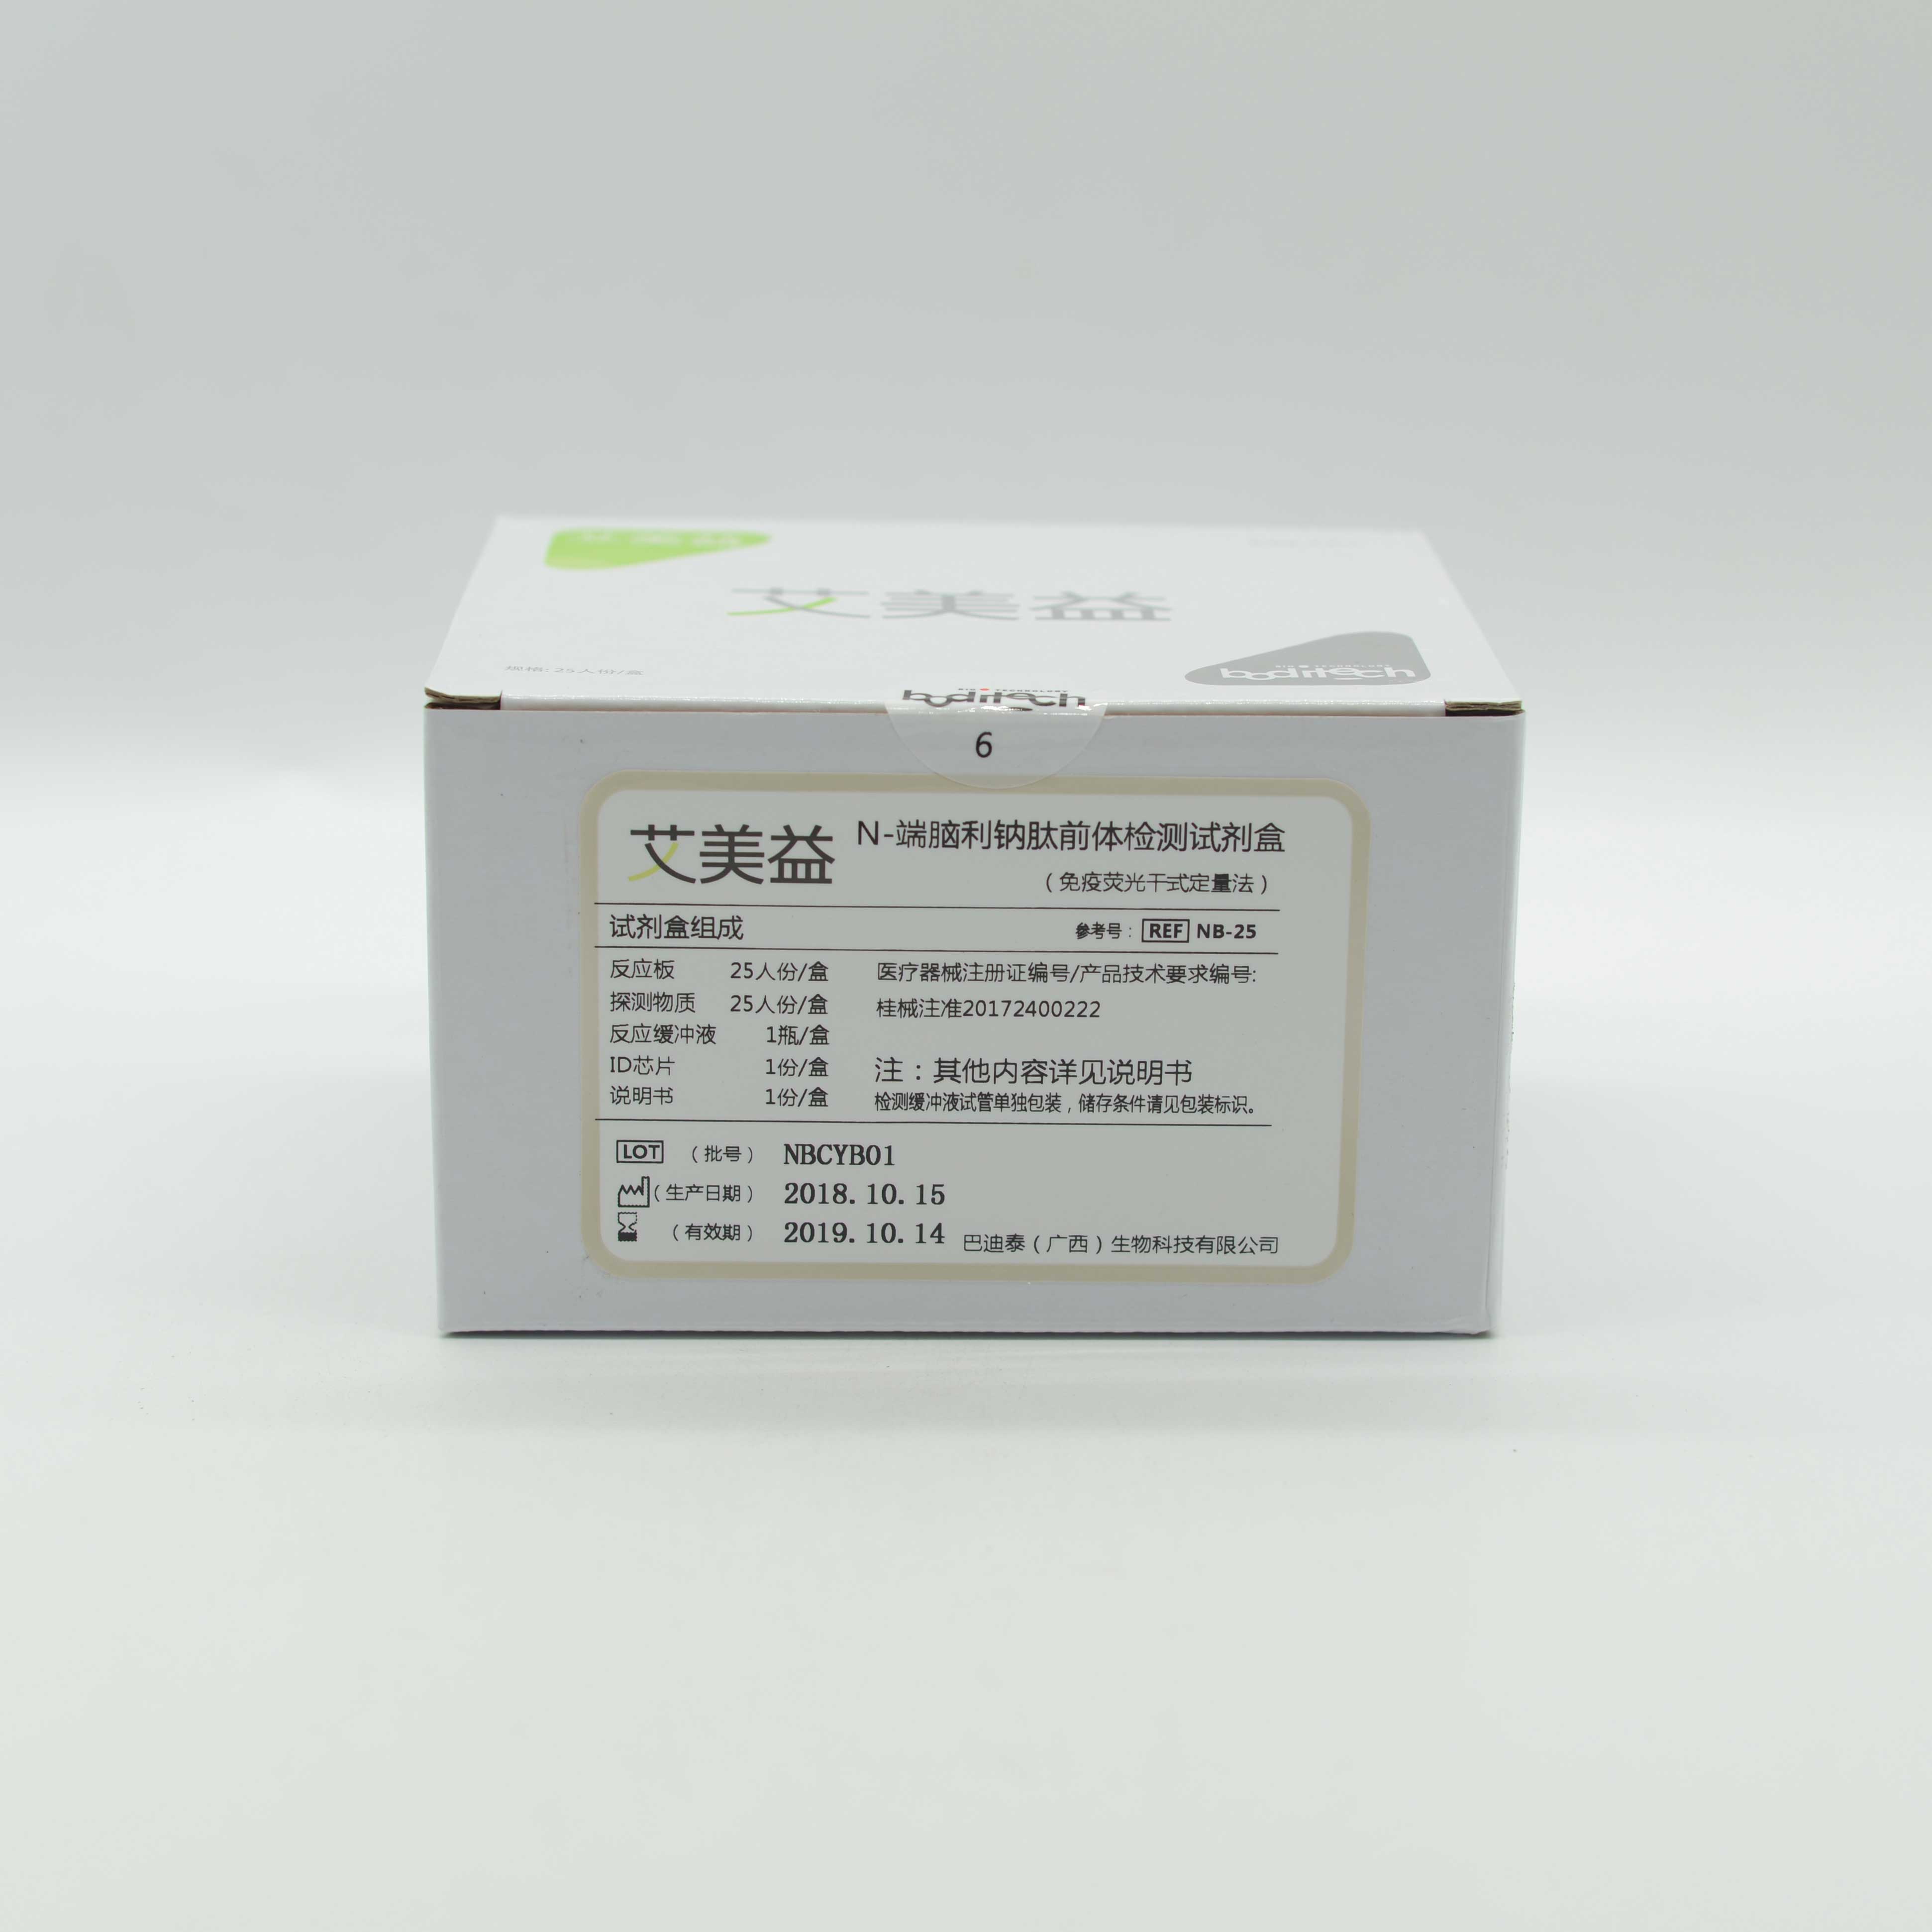 巴迪泰 N-端脑利钠肽前体检测试剂盒（免疫荧光干式定量法）